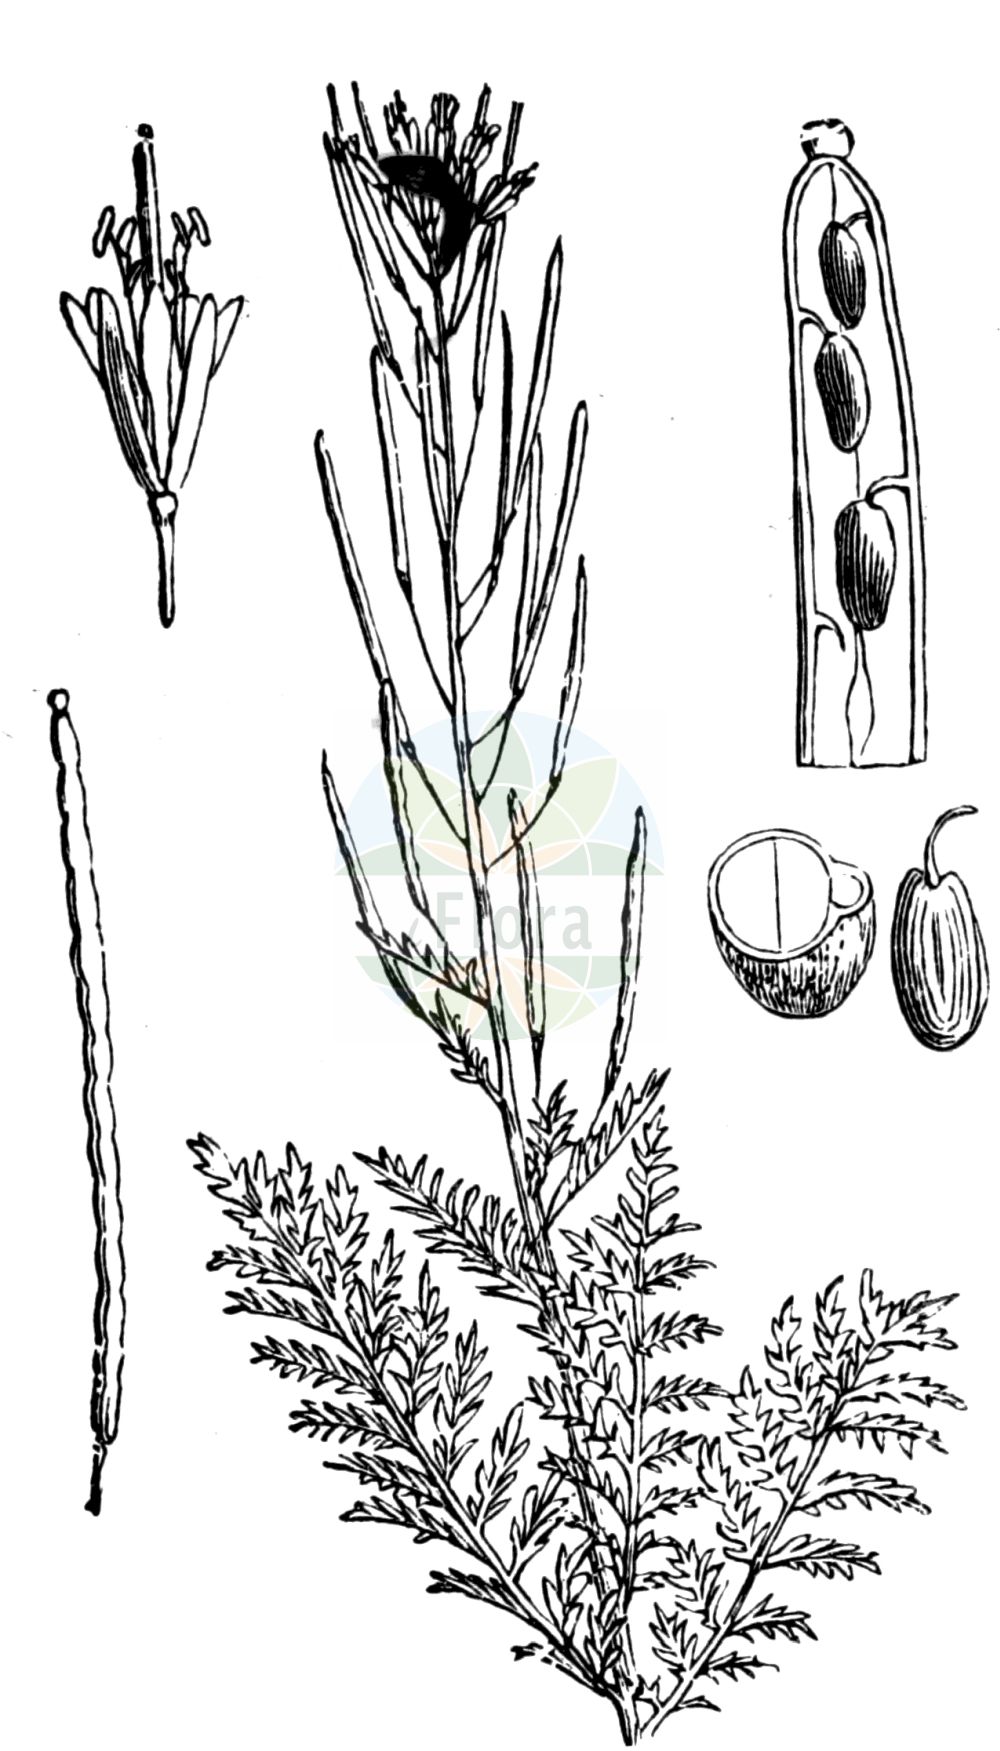 Historische Abbildung von Descurainia sophia (Gewöhnliche Besenrauke - Flixweed). Das Bild zeigt Blatt, Bluete, Frucht und Same. ---- Historical Drawing of Descurainia sophia (Gewöhnliche Besenrauke - Flixweed). The image is showing leaf, flower, fruit and seed.(Descurainia sophia,Gewöhnliche Besenrauke,Flixweed,Descurainia sophia,Descurainia sophia (L.) Prantl,Sisymbrium persicum,Sisymbrium sophia,Gewoehnliche Besenrauke,Besenrauke,Sophienkraut,Flixweed,Herb Sophia,Descurainia,Besenrauke,Brassicaceae,Kreuzblütler,Cabbage family,Blatt,Bluete,Frucht,Same,leaf,flower,fruit,seed,Fitch et al. (1880))